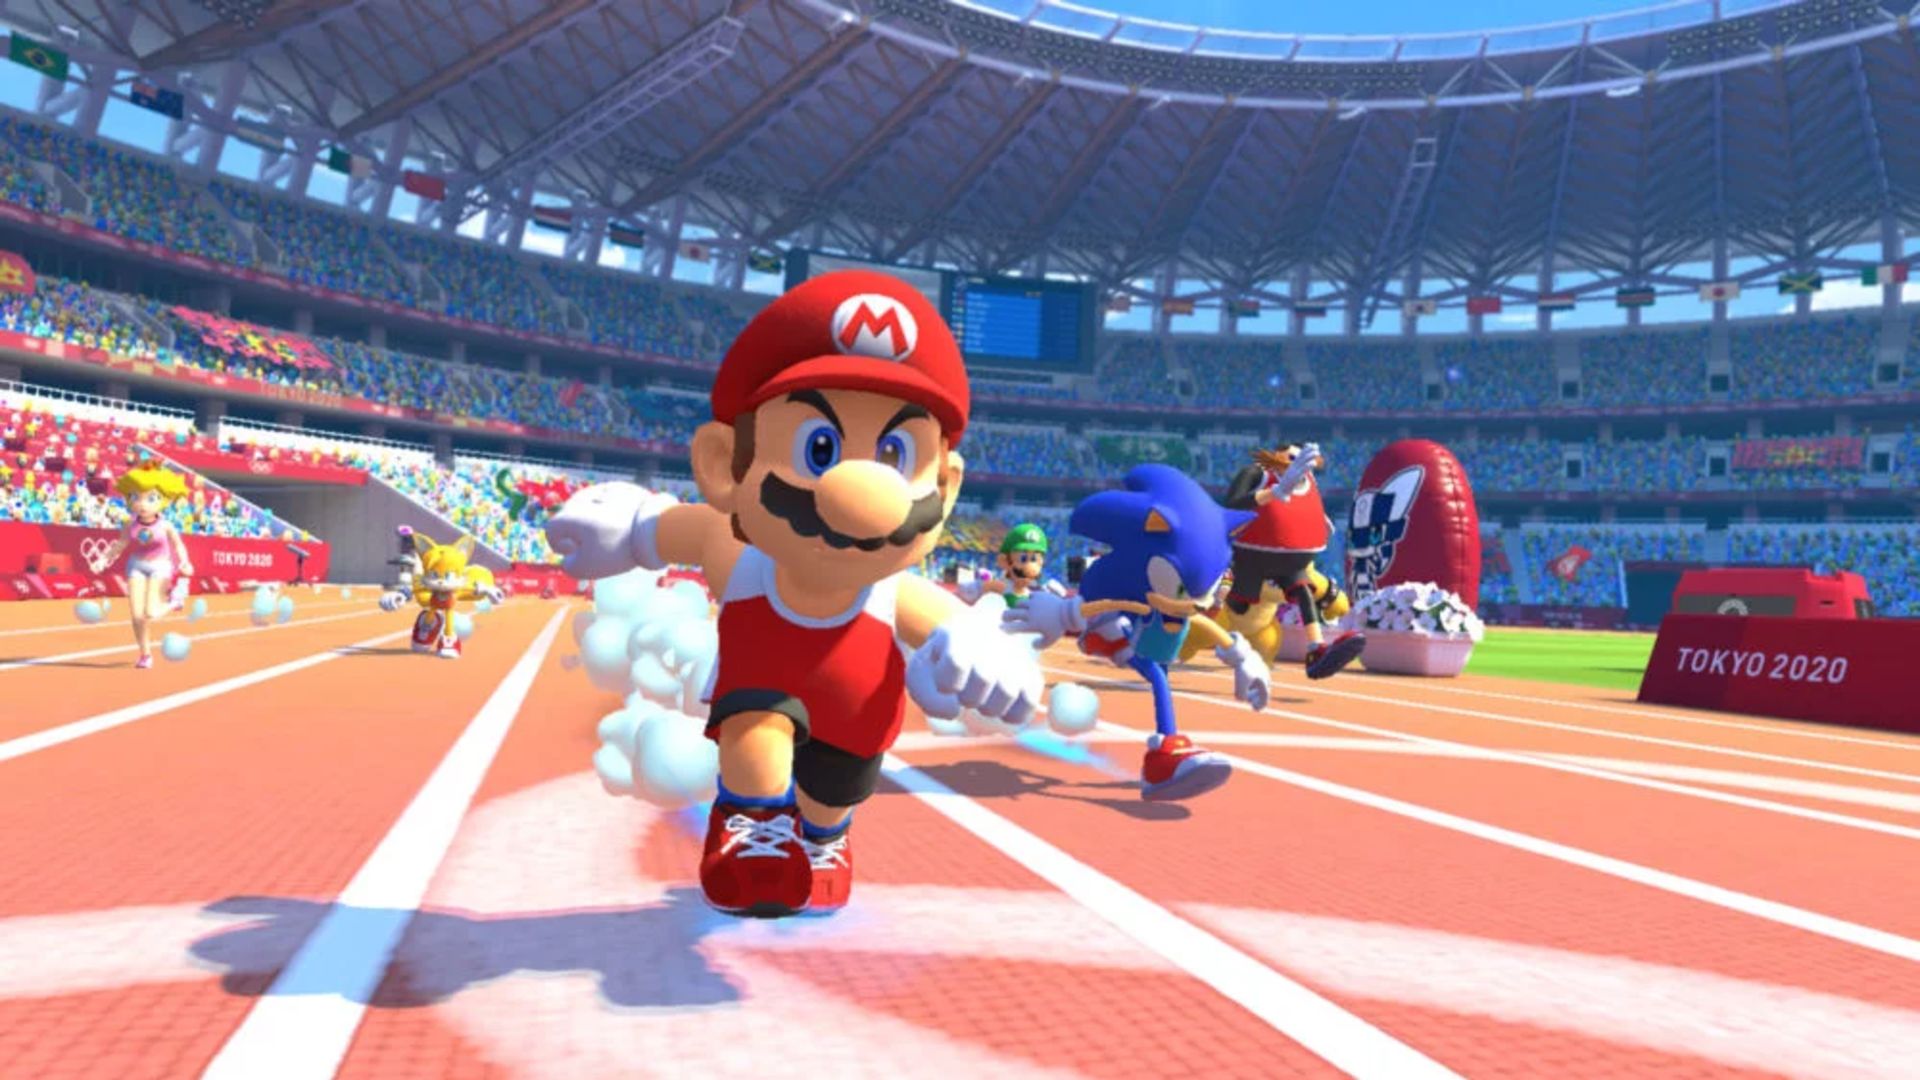 Mario & Sonic nos Jogos Olímpicos de Tóquio 2020 – Novo trailer promocional  é divulgado